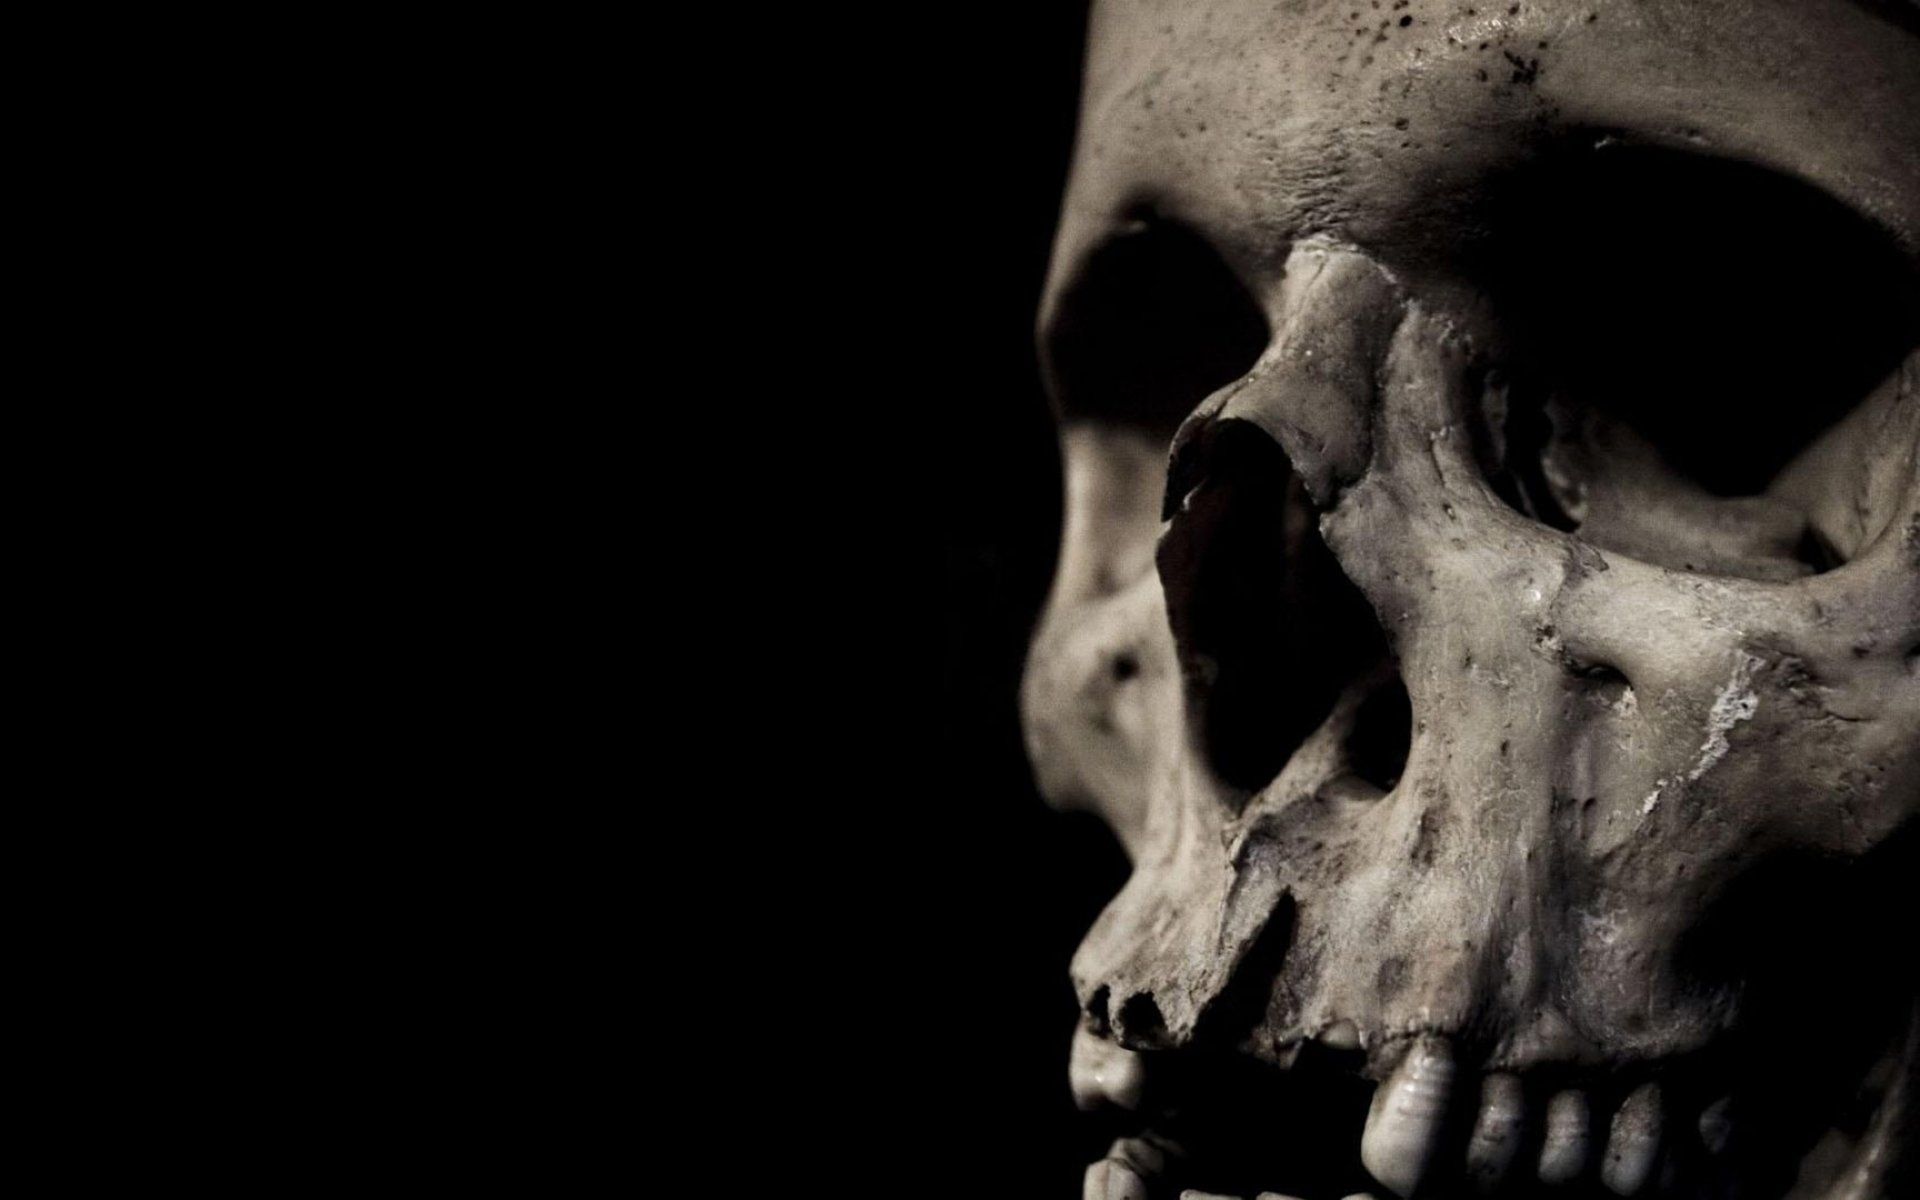 Dark skull evil horror skulls art artwork skeleton d wallpaper ...